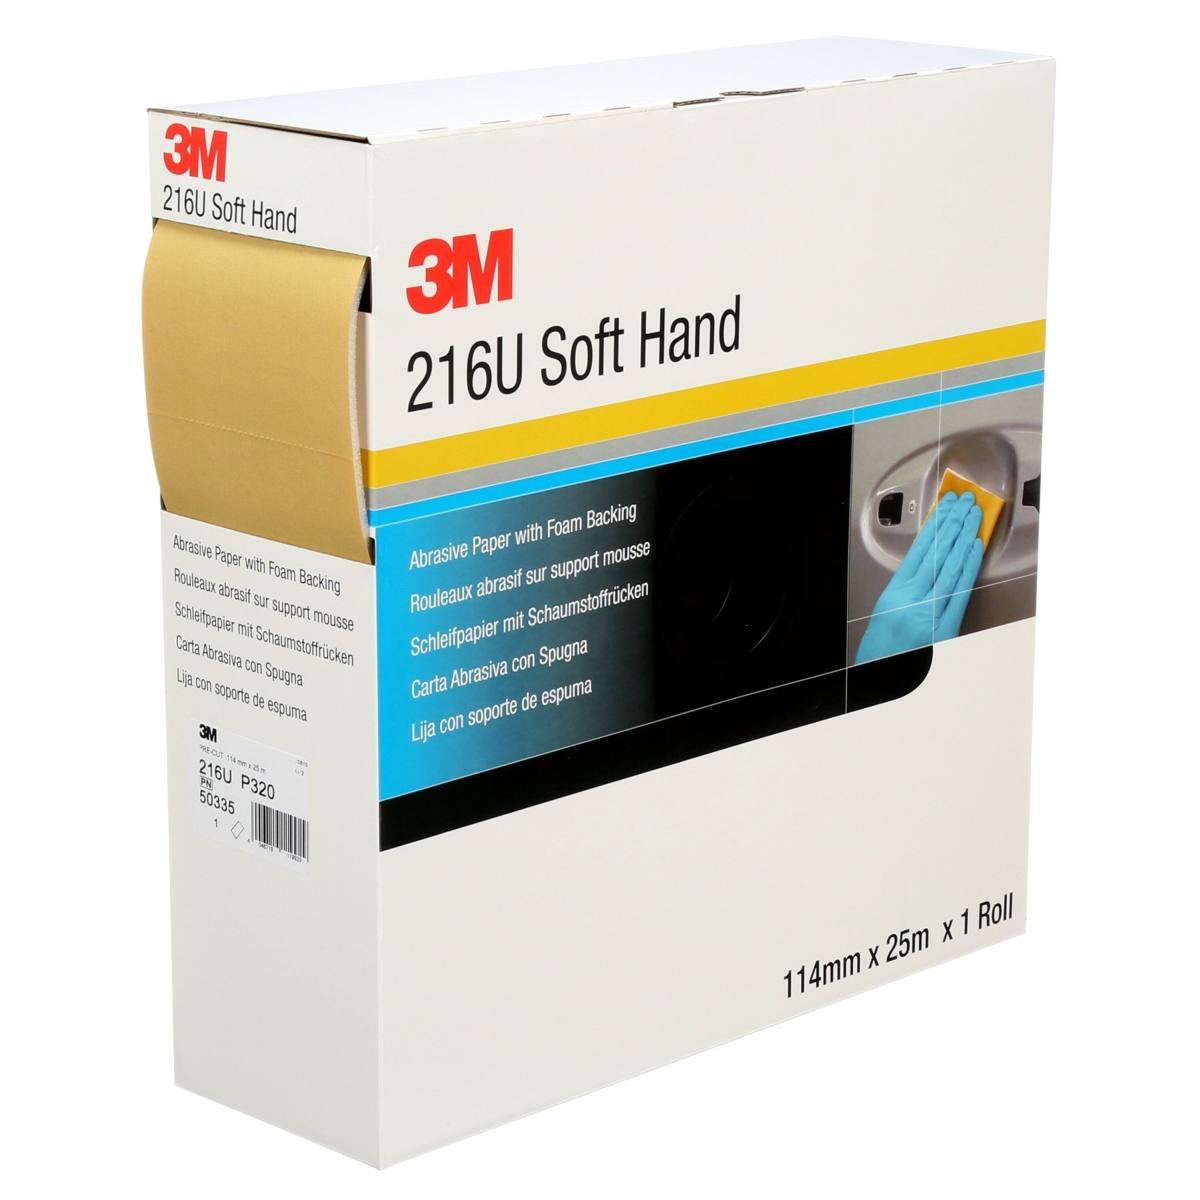 3M Soft Hand Sheet 216U, Goud, 114 mm x 135 mm, P80